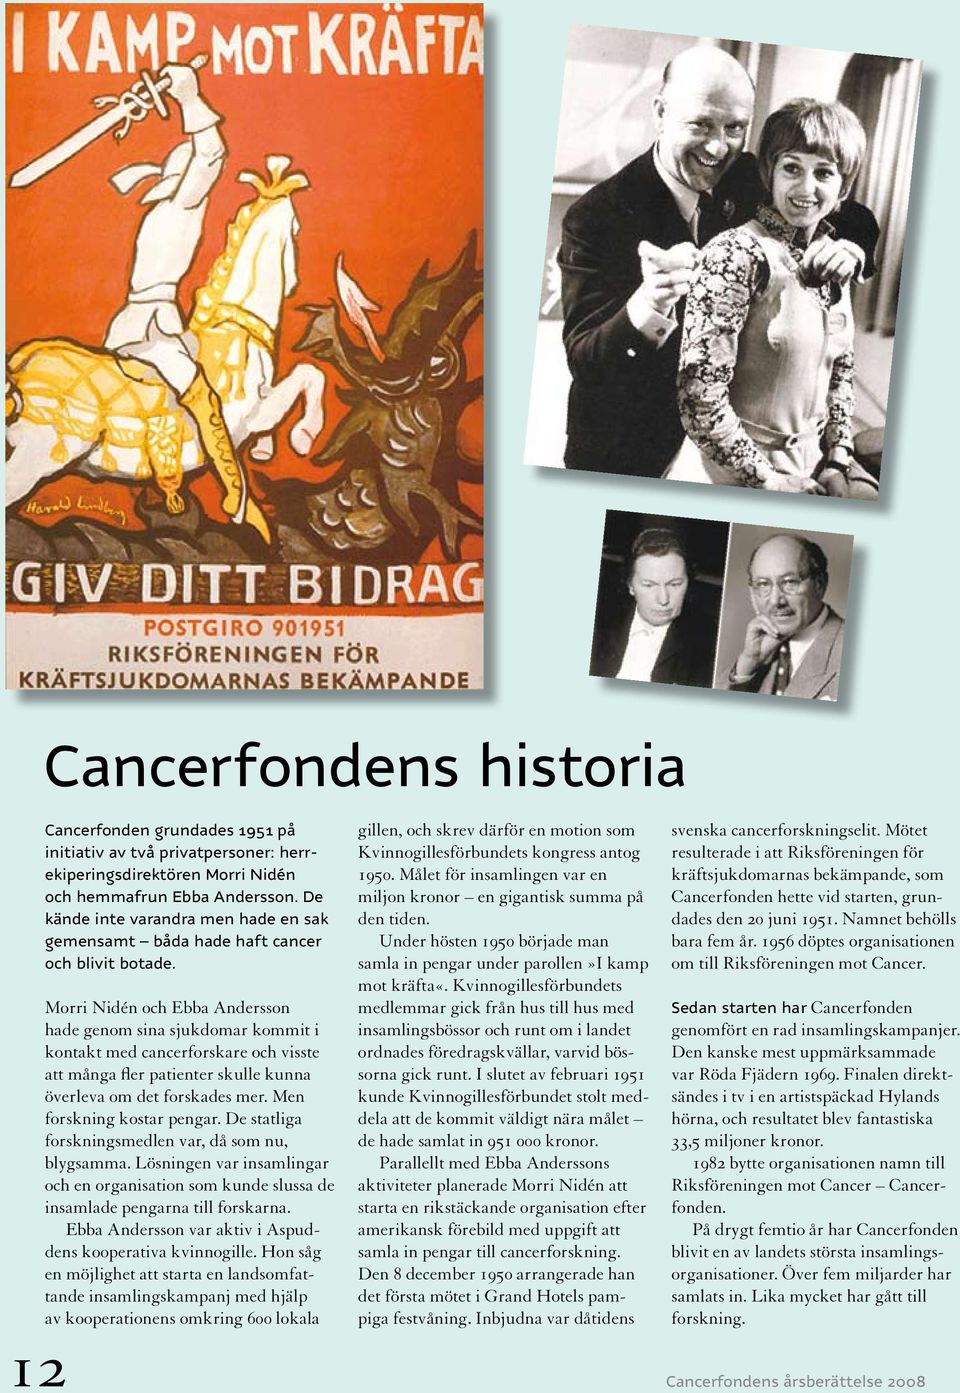 Morri Nidén och Ebba Andersson hade genom sina sjukdomar kommit i kontakt med cancerforskare och visste att många fler patienter skulle kunna överleva om det forskades mer.